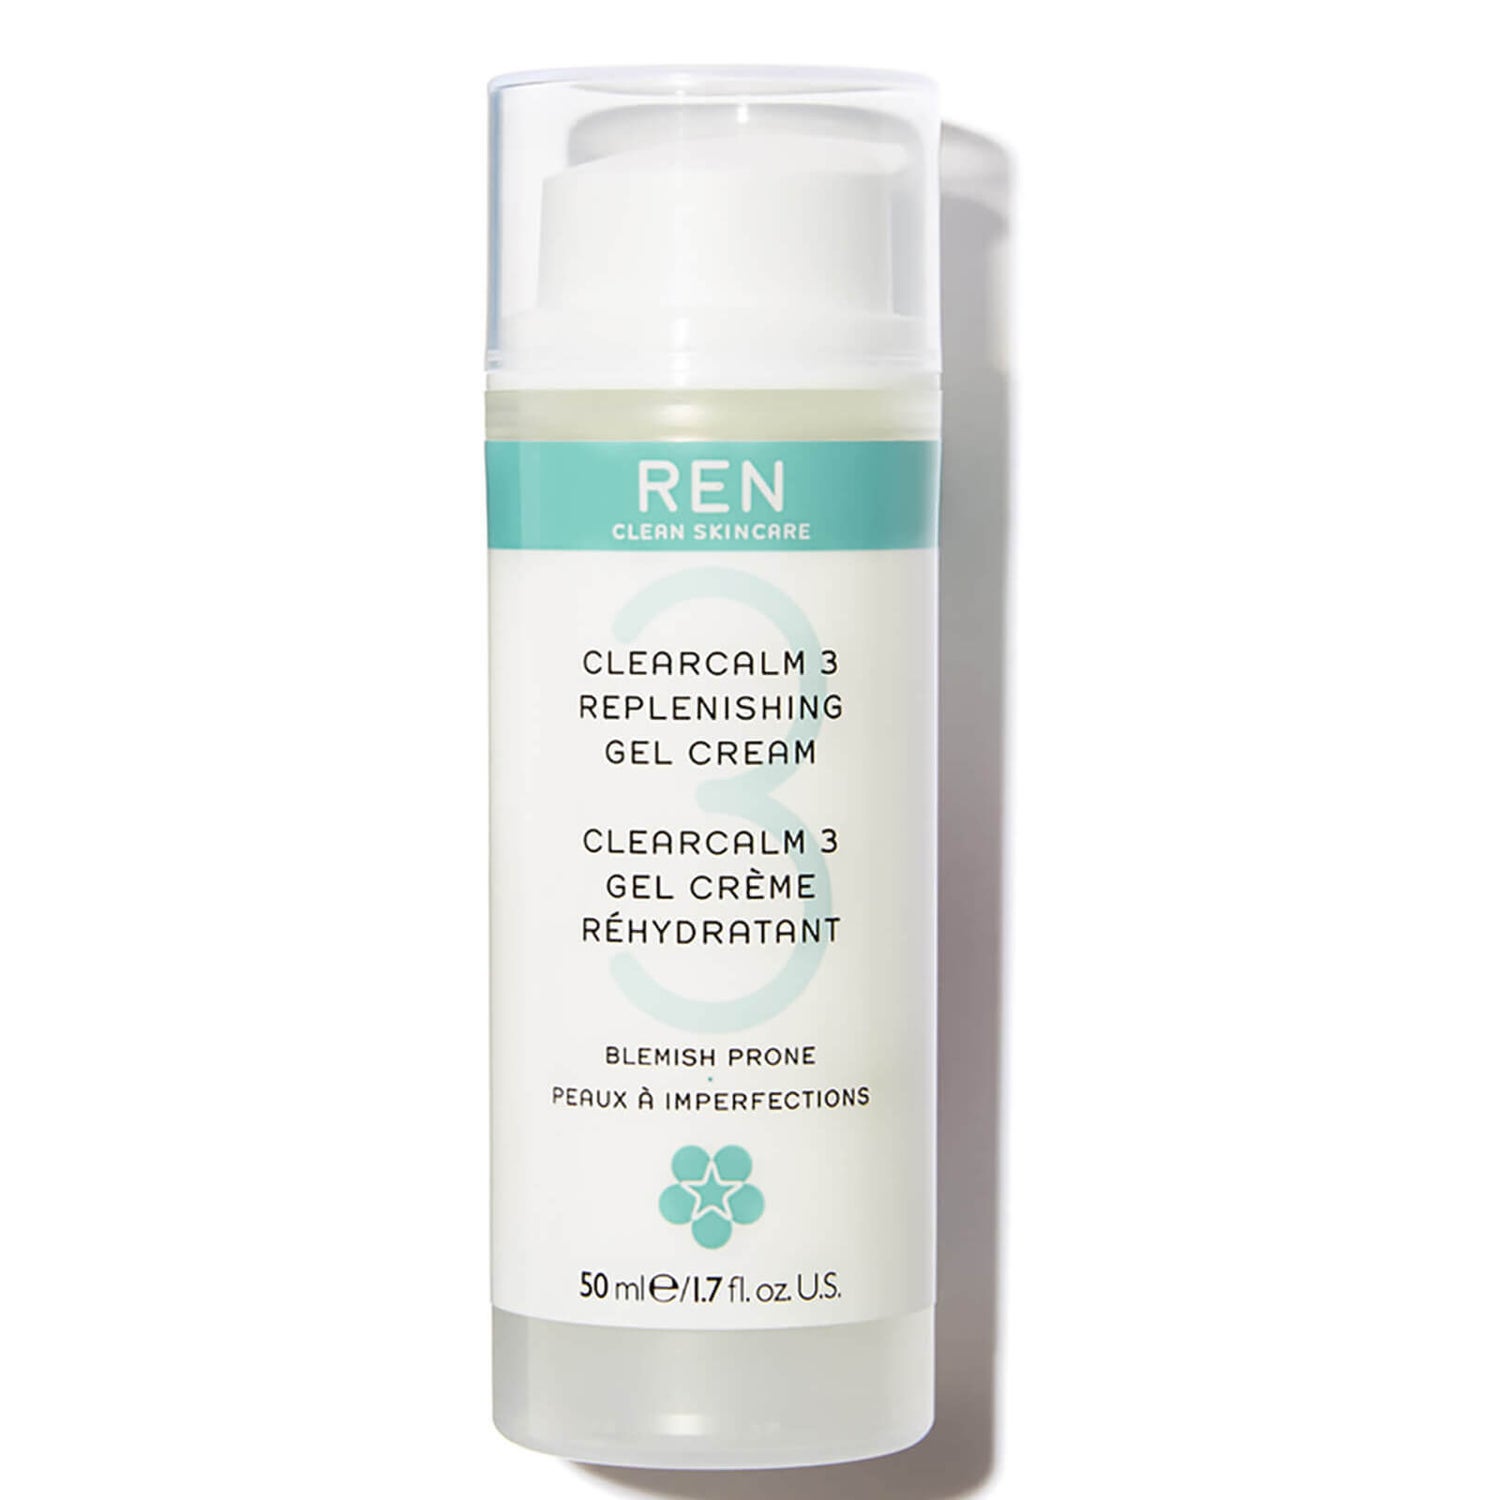 REN Clear Calm 3 gel-crème réhydratant 50ml